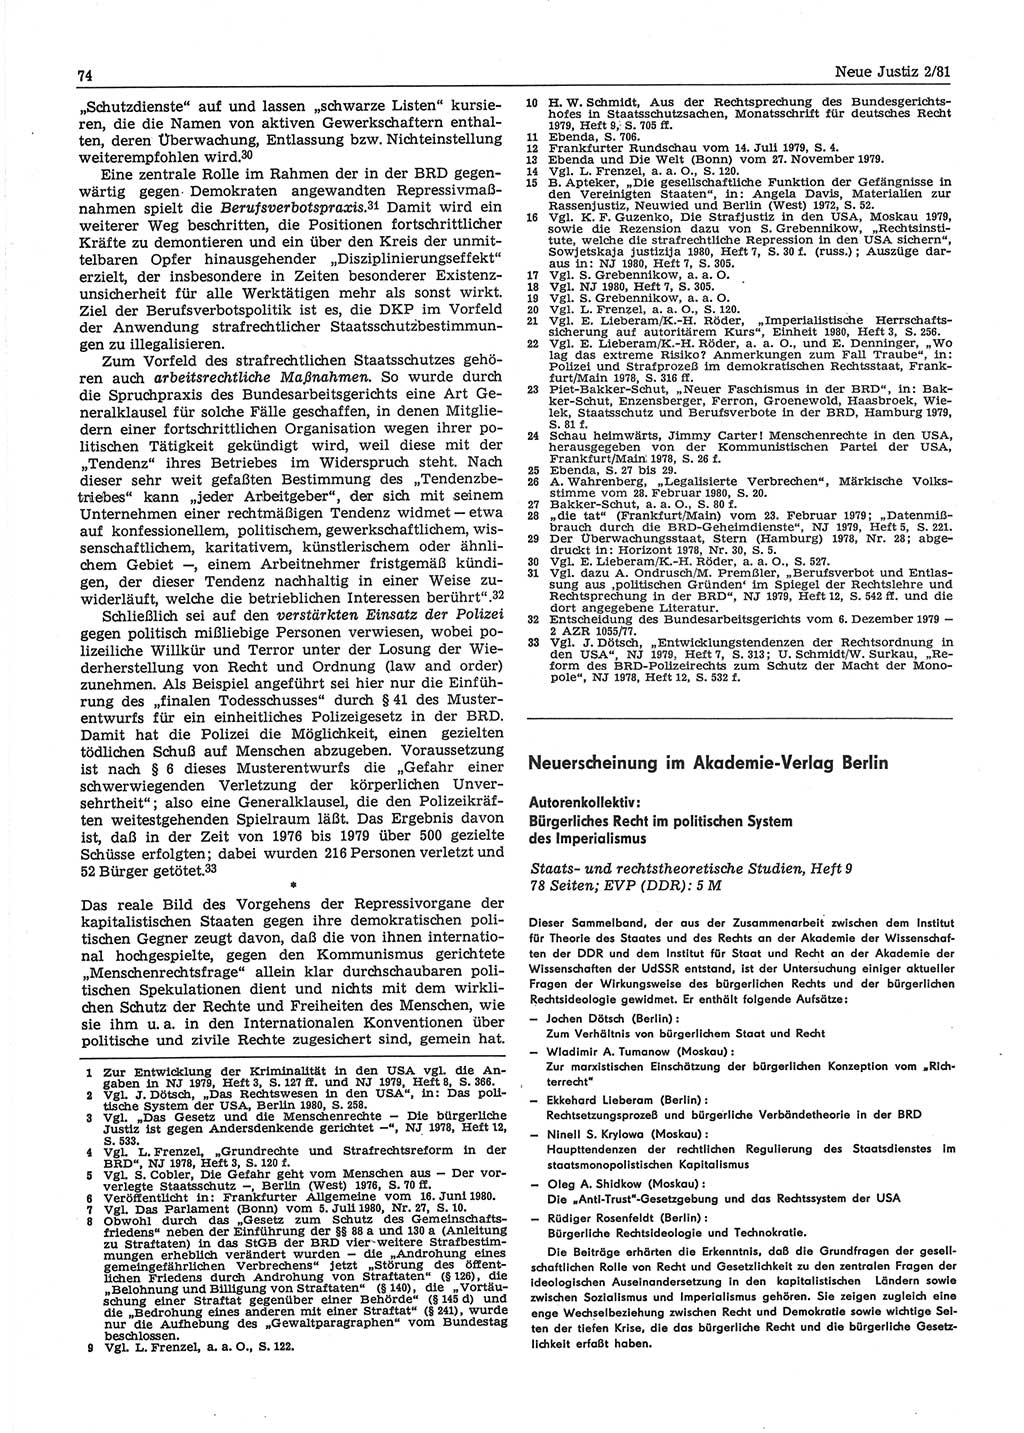 Neue Justiz (NJ), Zeitschrift für sozialistisches Recht und Gesetzlichkeit [Deutsche Demokratische Republik (DDR)], 35. Jahrgang 1981, Seite 74 (NJ DDR 1981, S. 74)